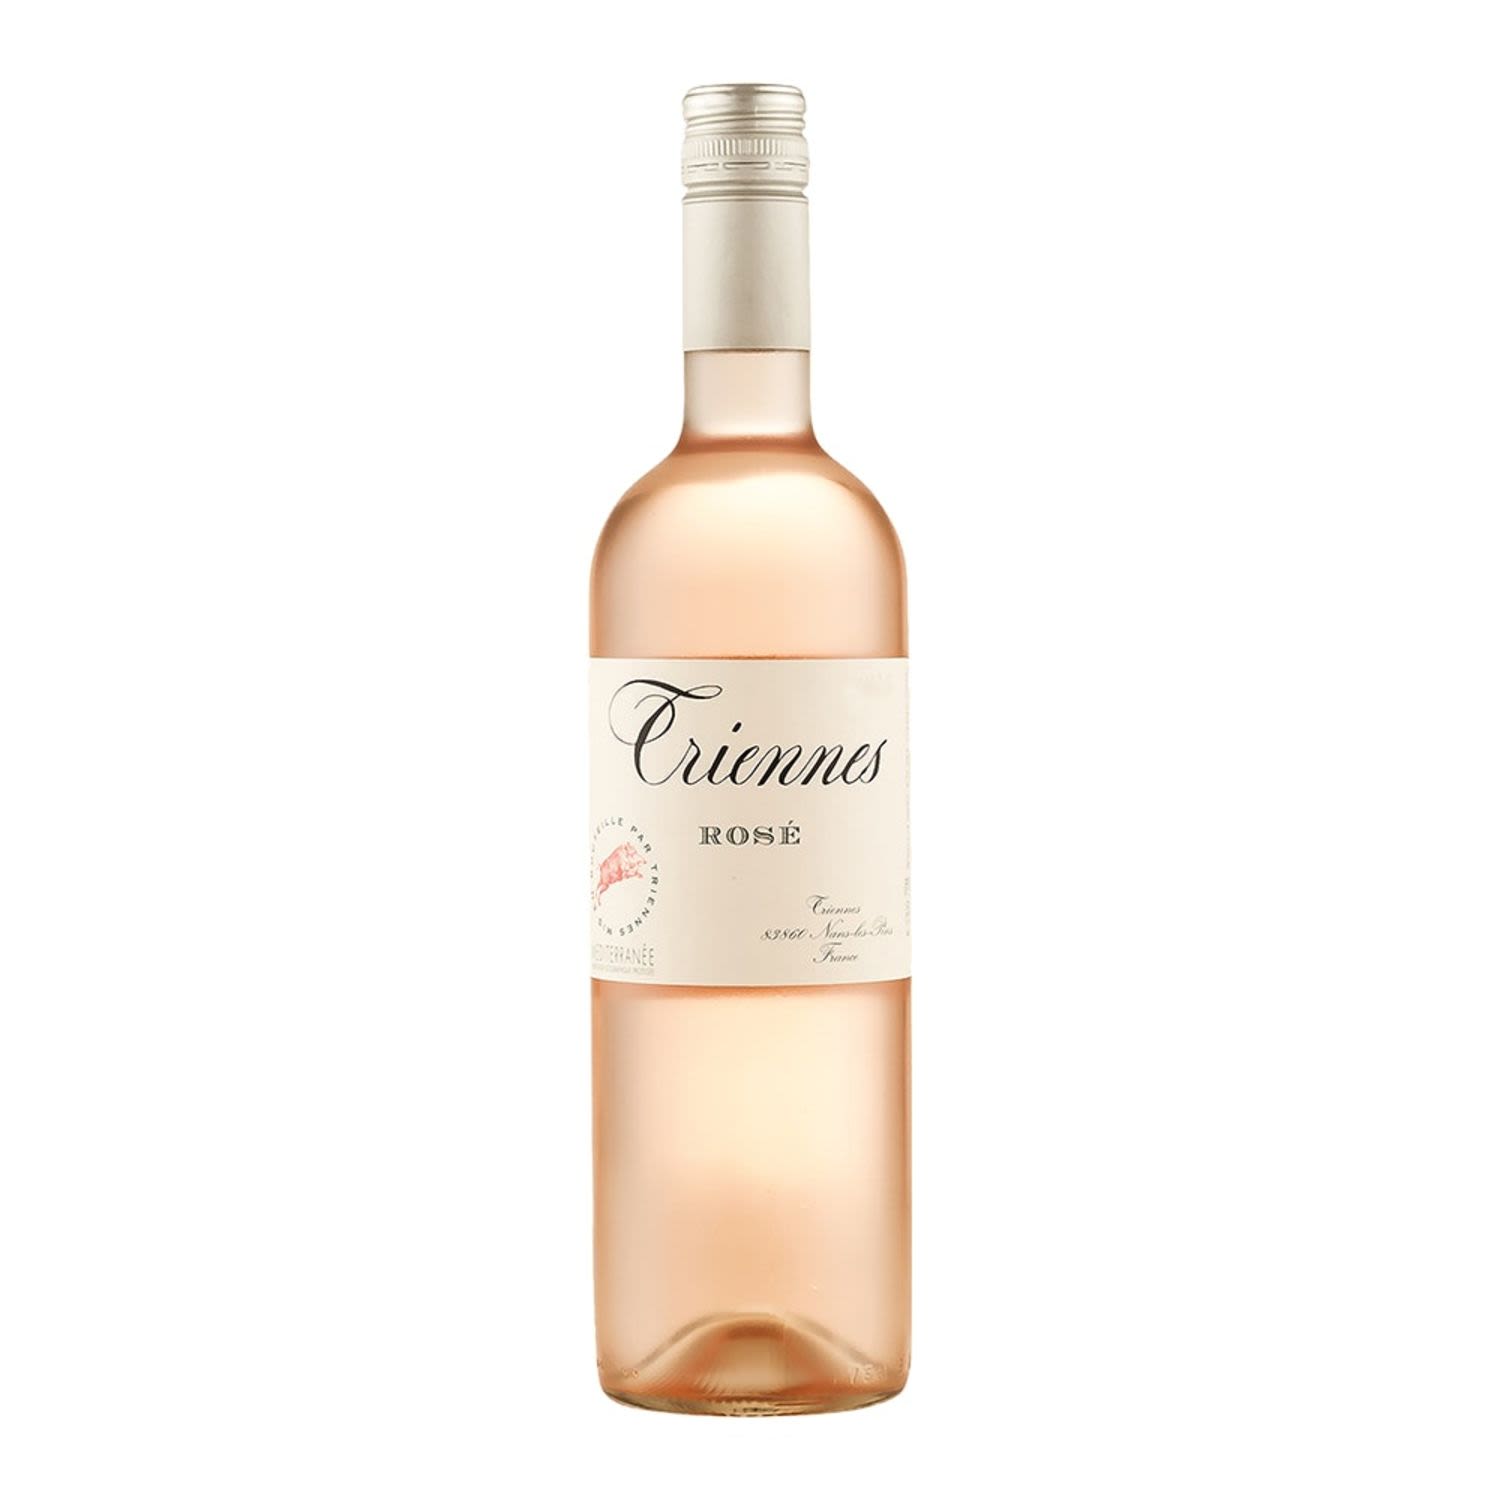 Domaine de Triennes Rose 750mL Bottle